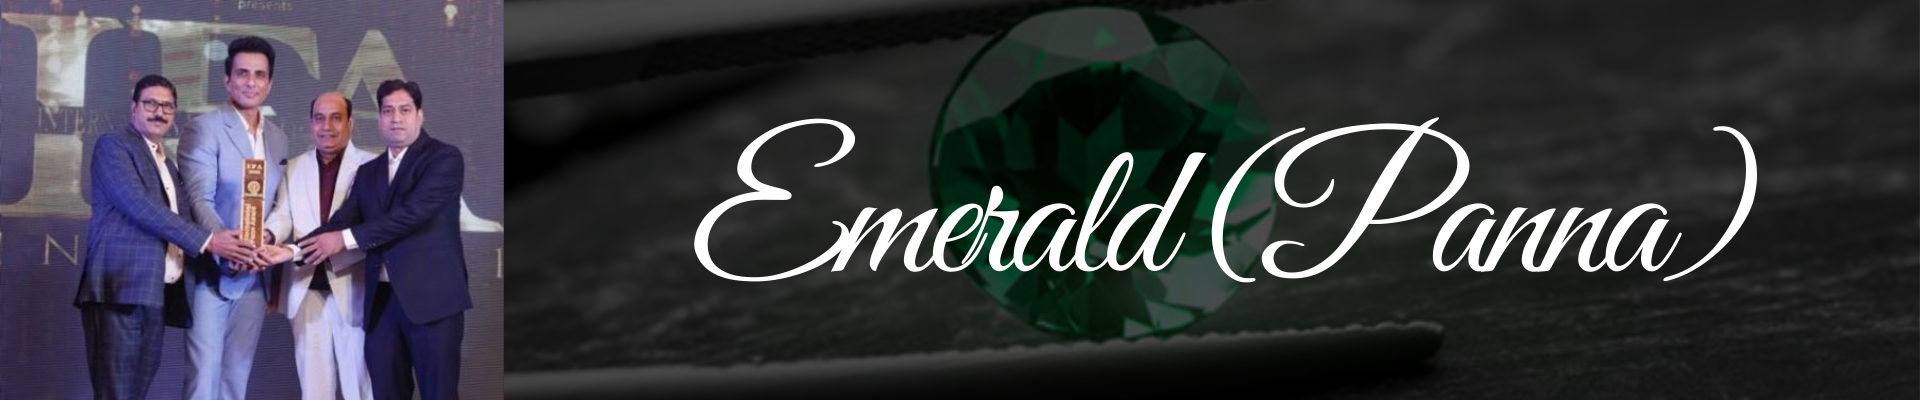 emerald stone price | Emerald Stone Price in India | Original Emerald Stone | Emerald Green Stone Price 